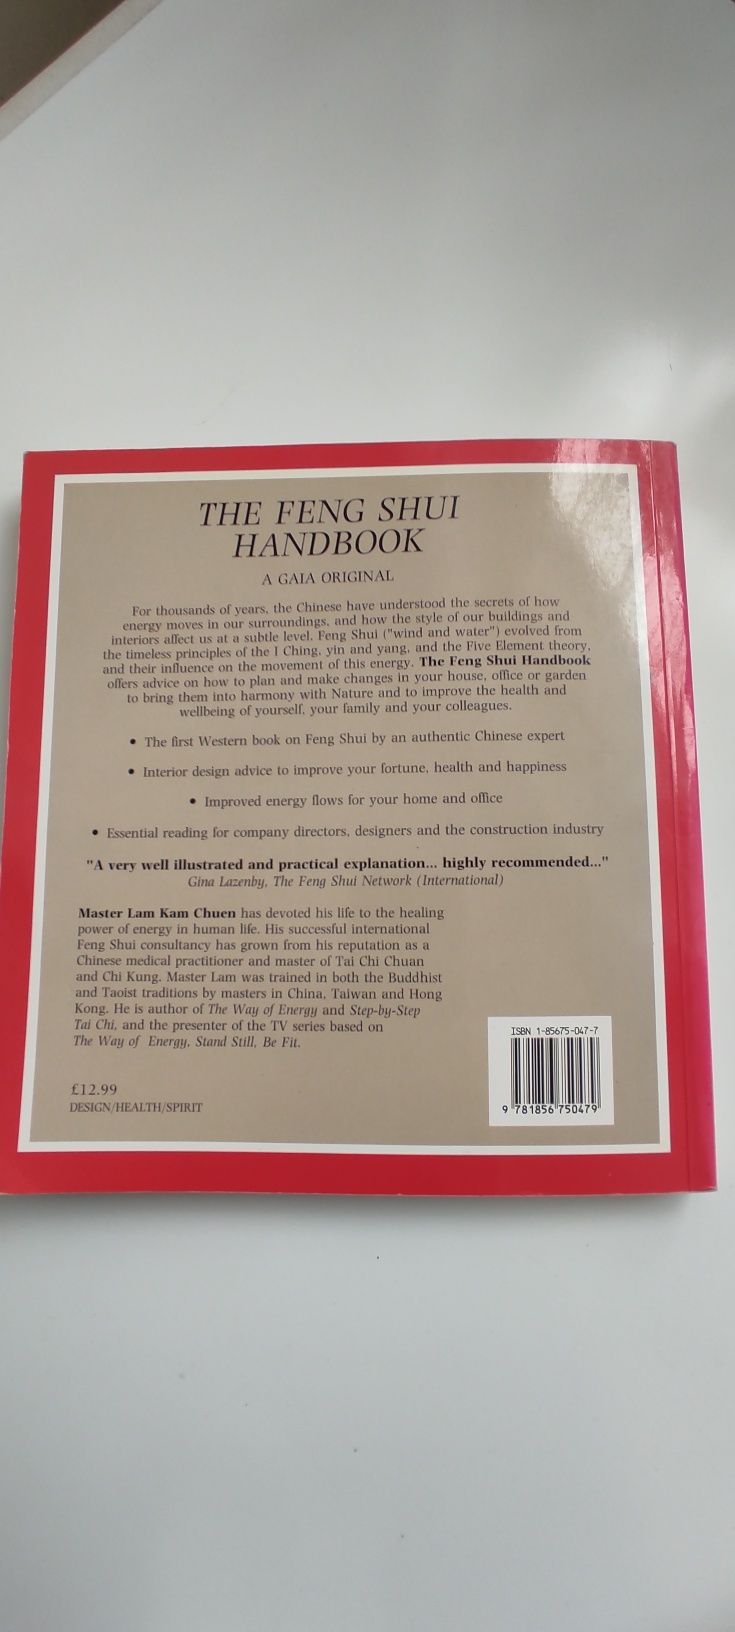 Master Kamchuen Lam "The Feng Shui Handbook"